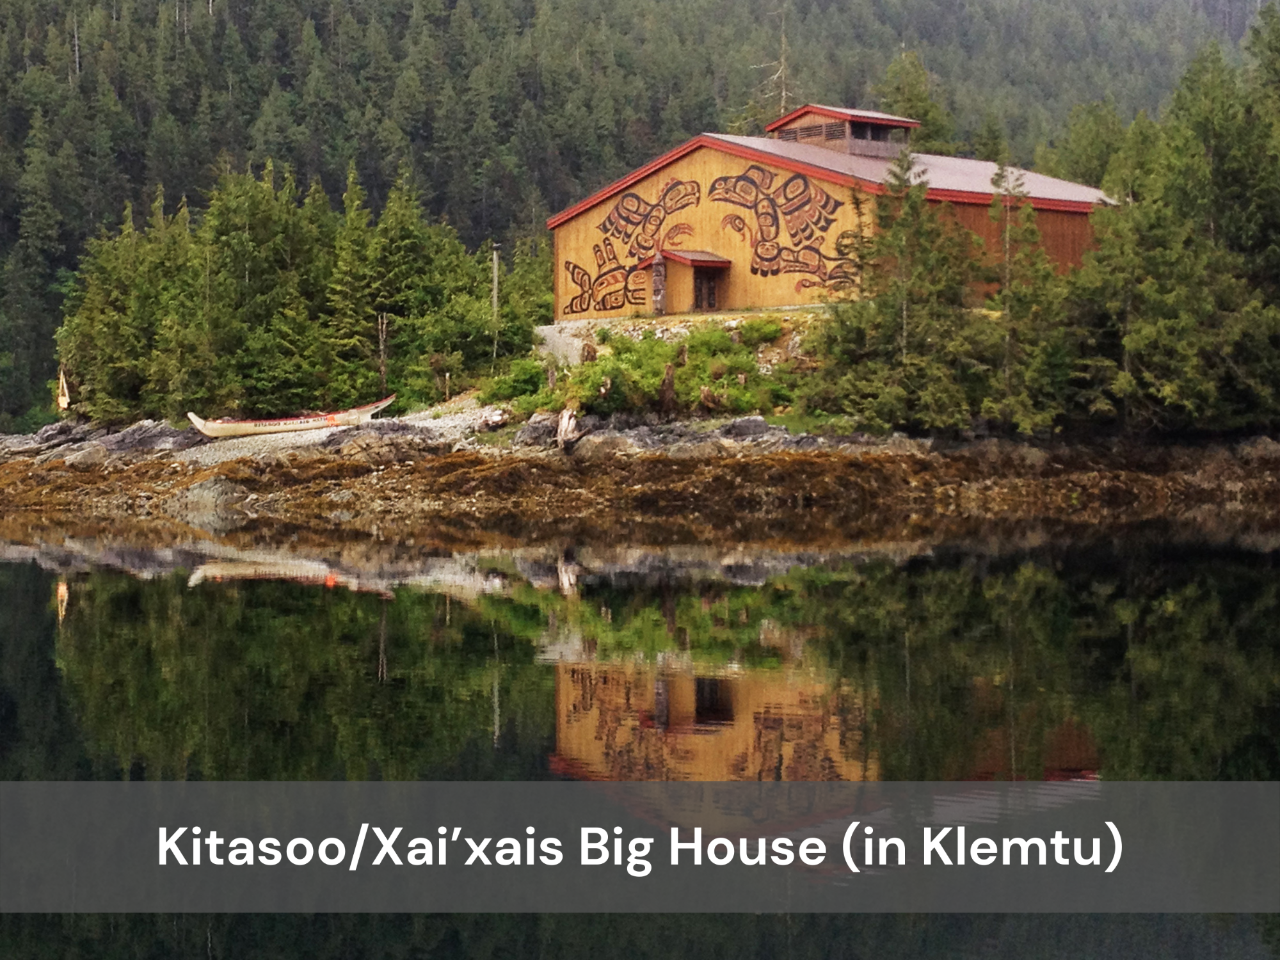 Kitasoo/Xai’xais Big House (in Klemtu)